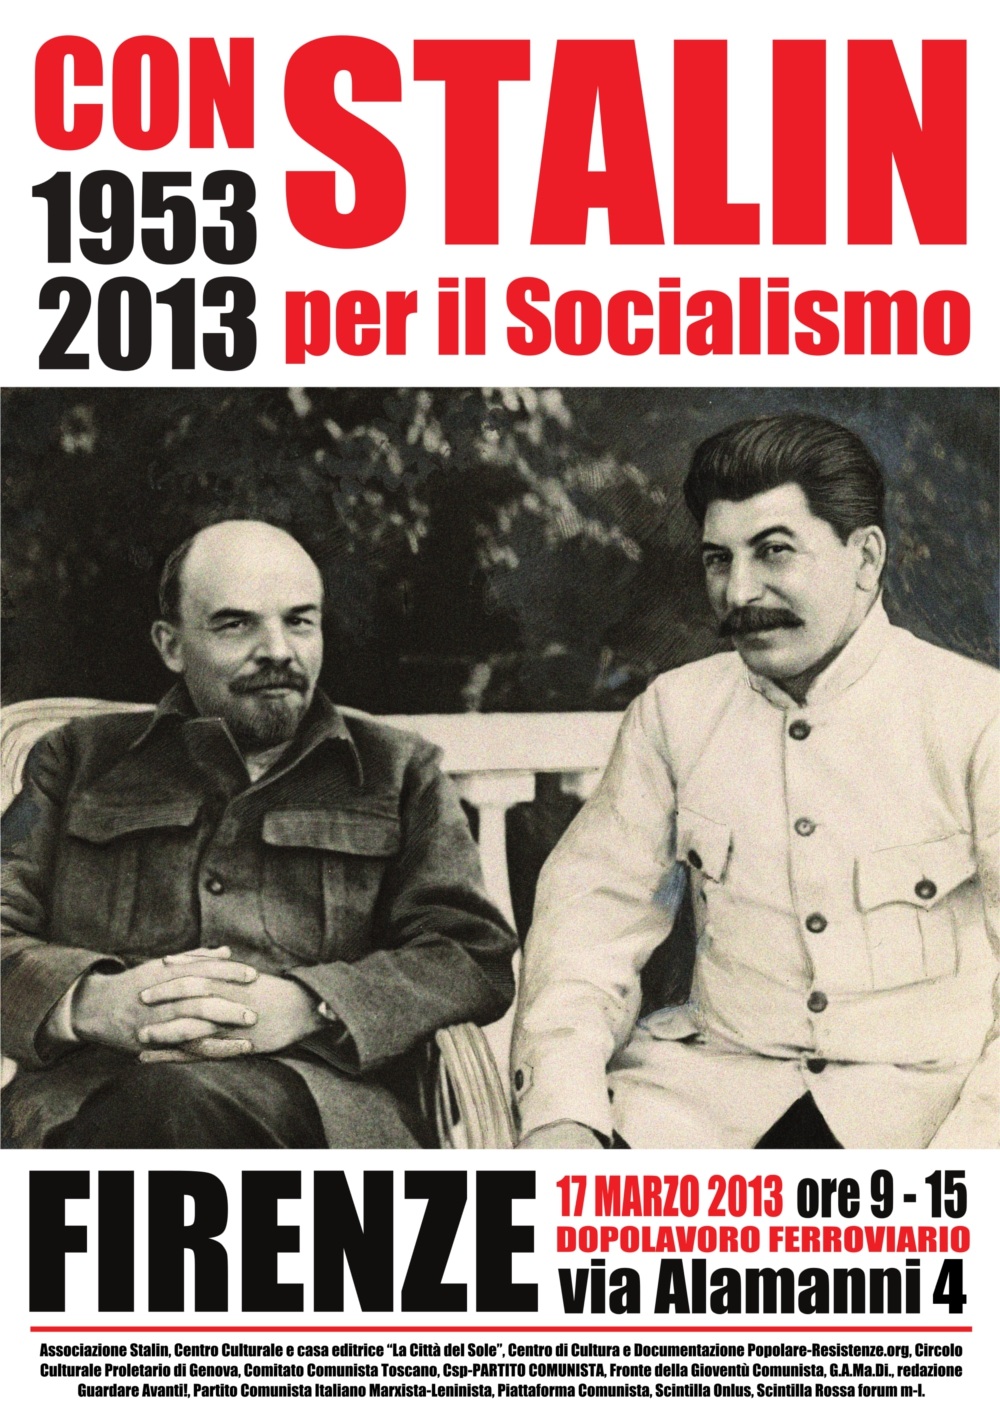 5 Marzo 1953-2013 CON STALIN. Non è fallito il Socialismo, è fallita la revisione del Socialismo. Nota di Marco Rizzo